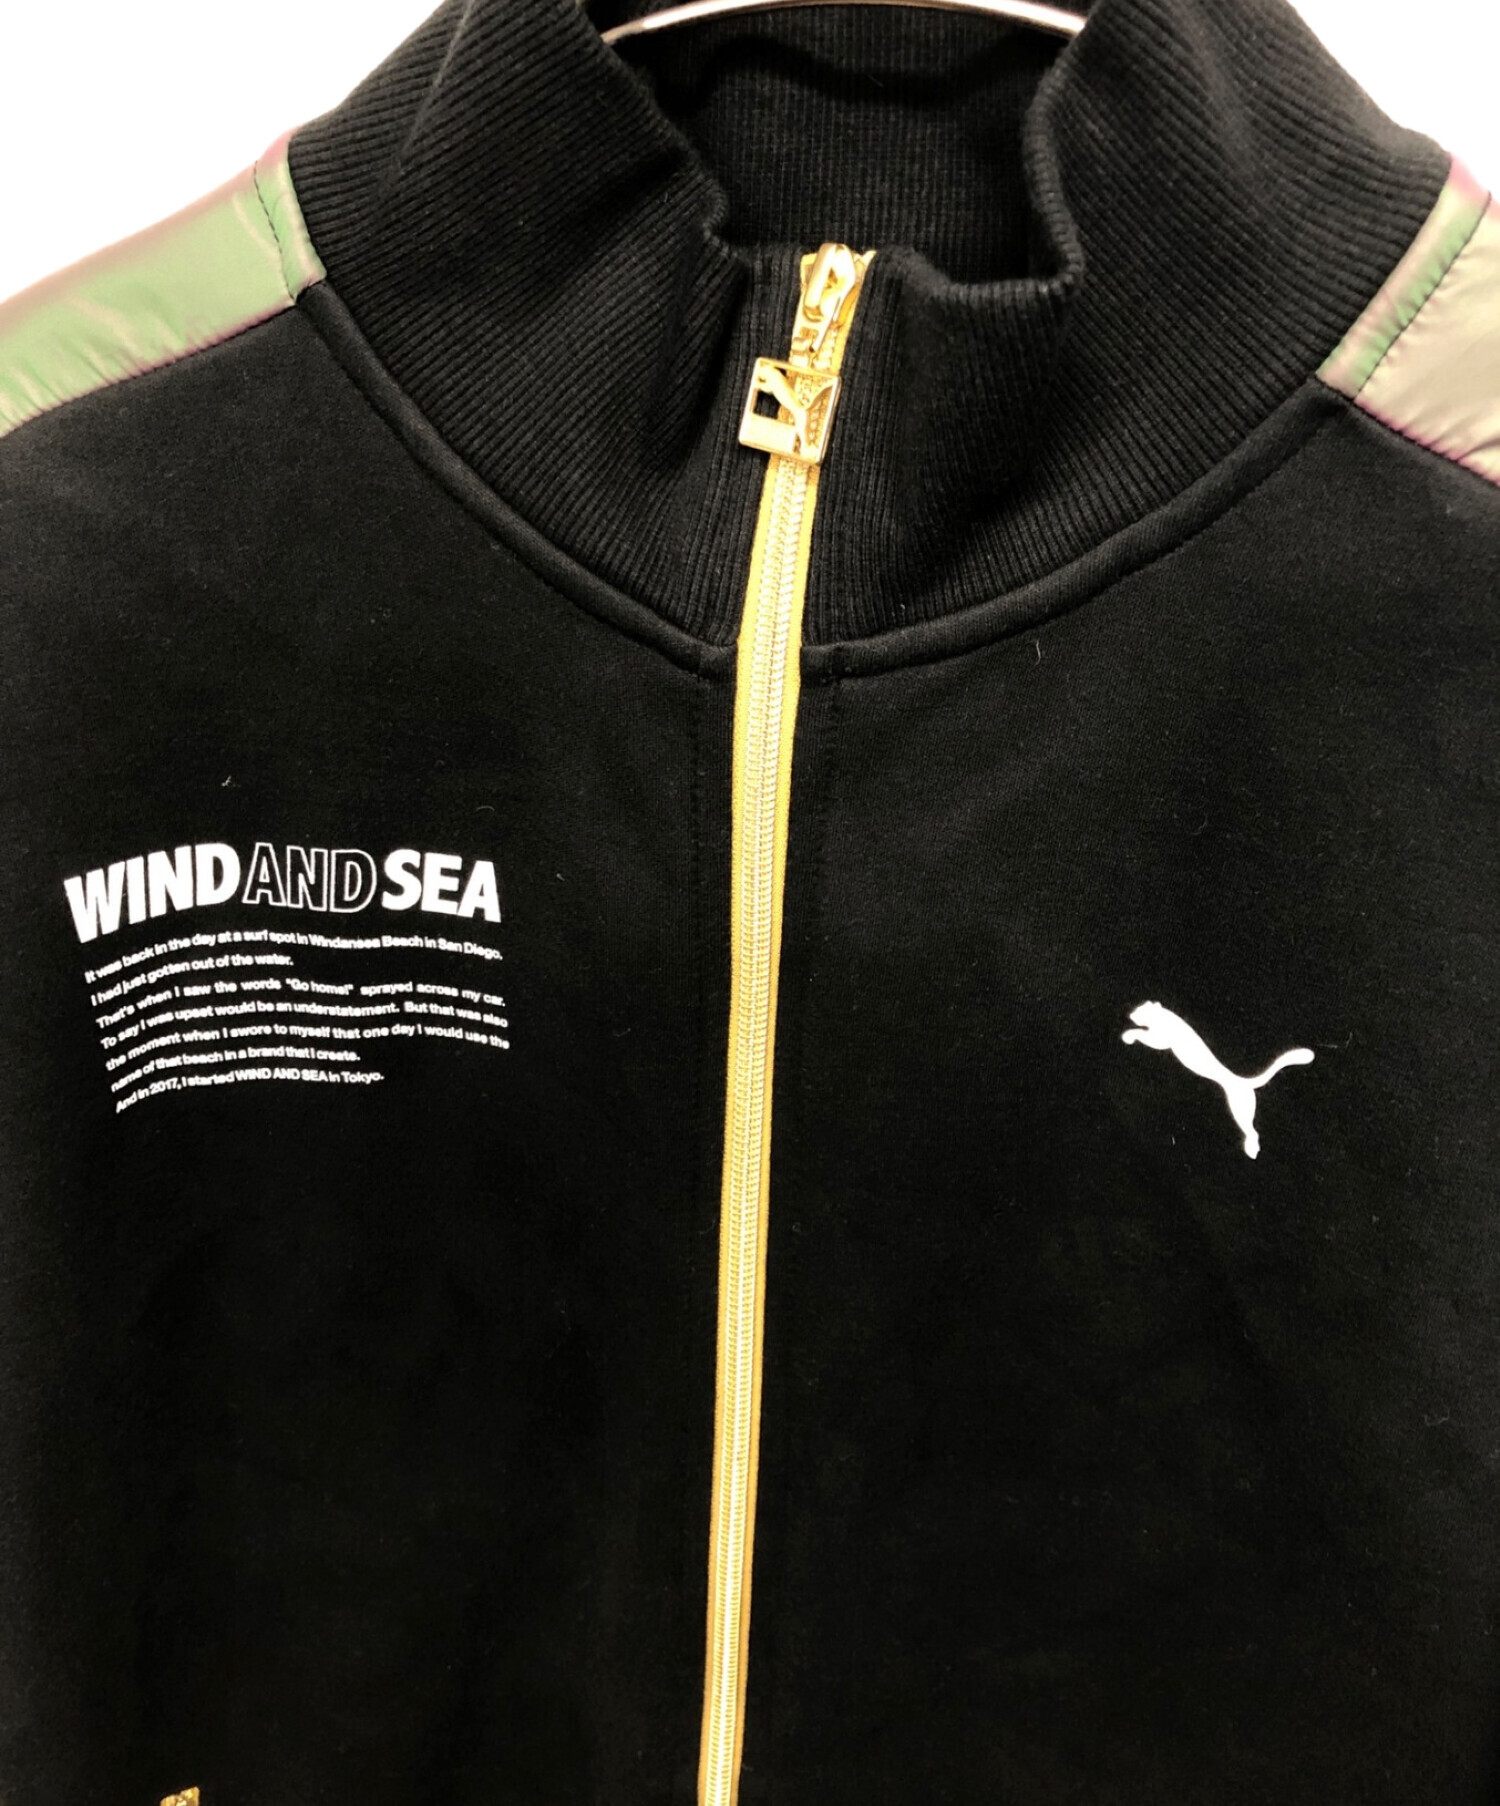 PUMA (プーマ) WIND AND SEA (ウィンダンシー) ジャケット ブラック サイズ:S